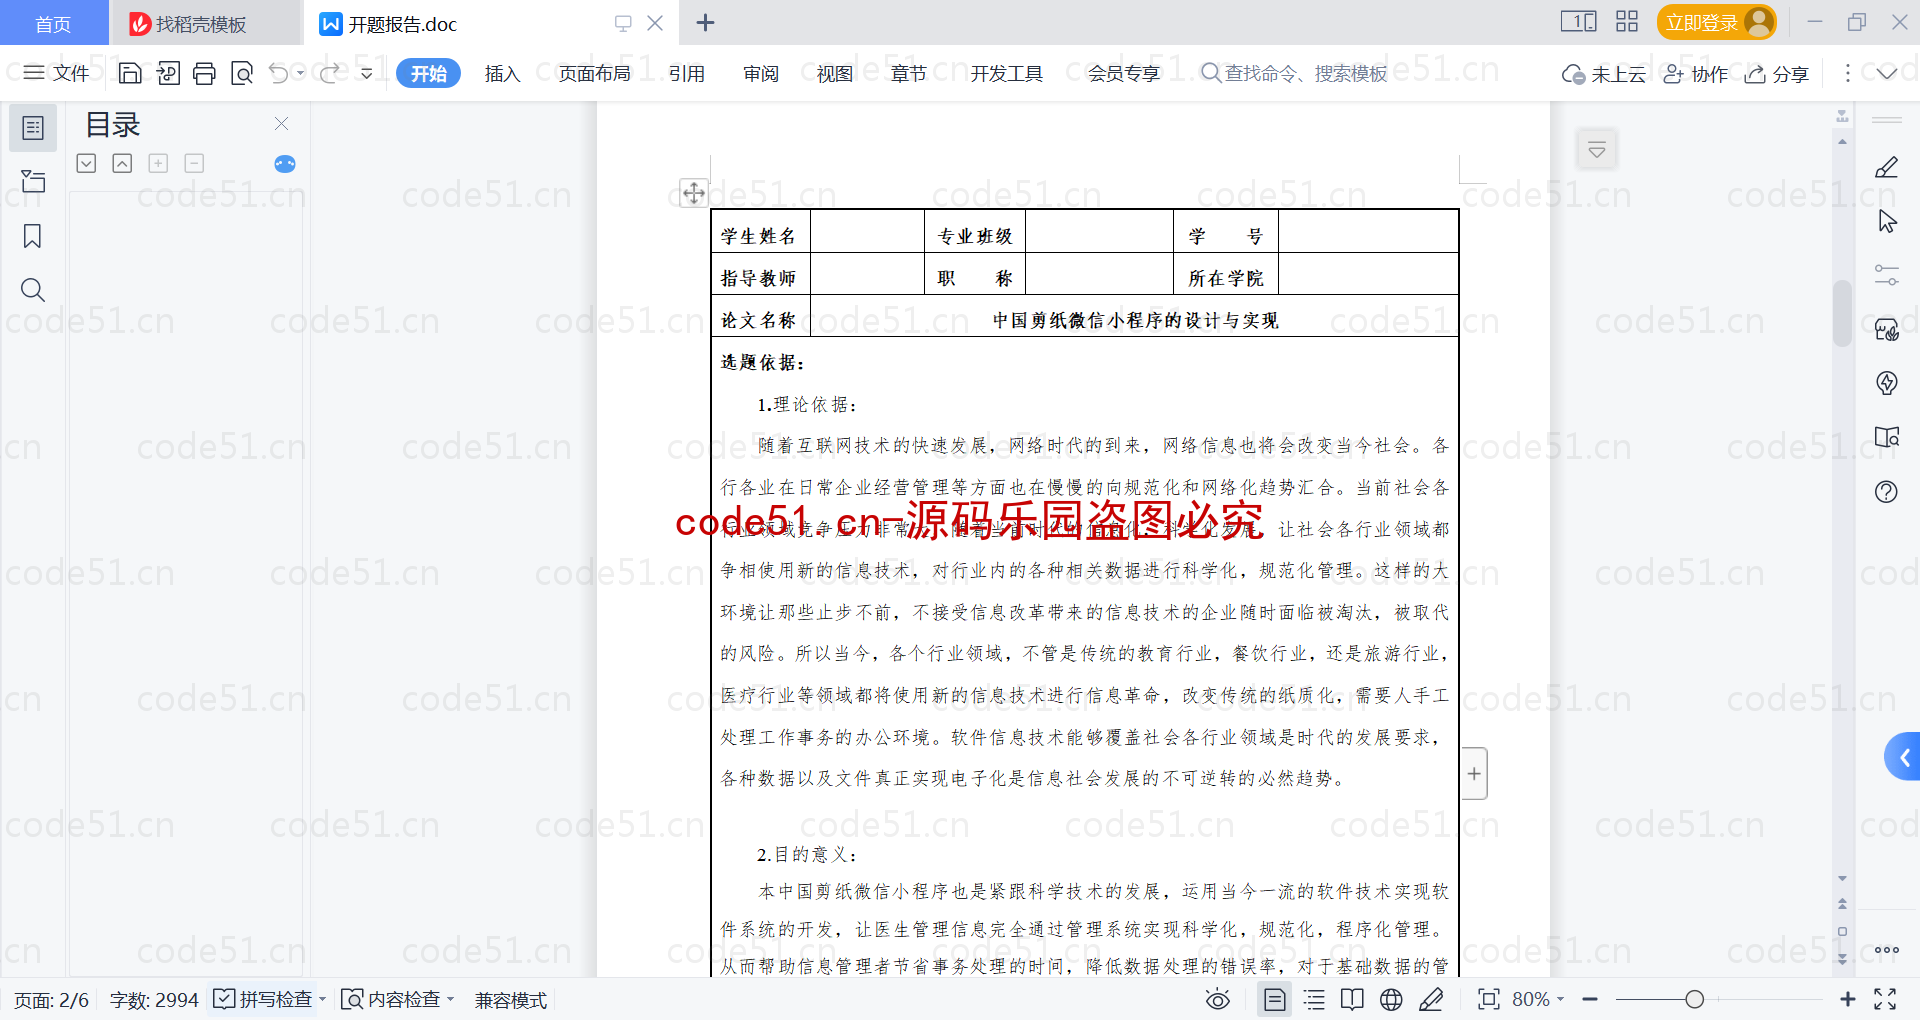 基于微信小程序+SSM+MySQL的中国剪纸微信小程序(附论文)